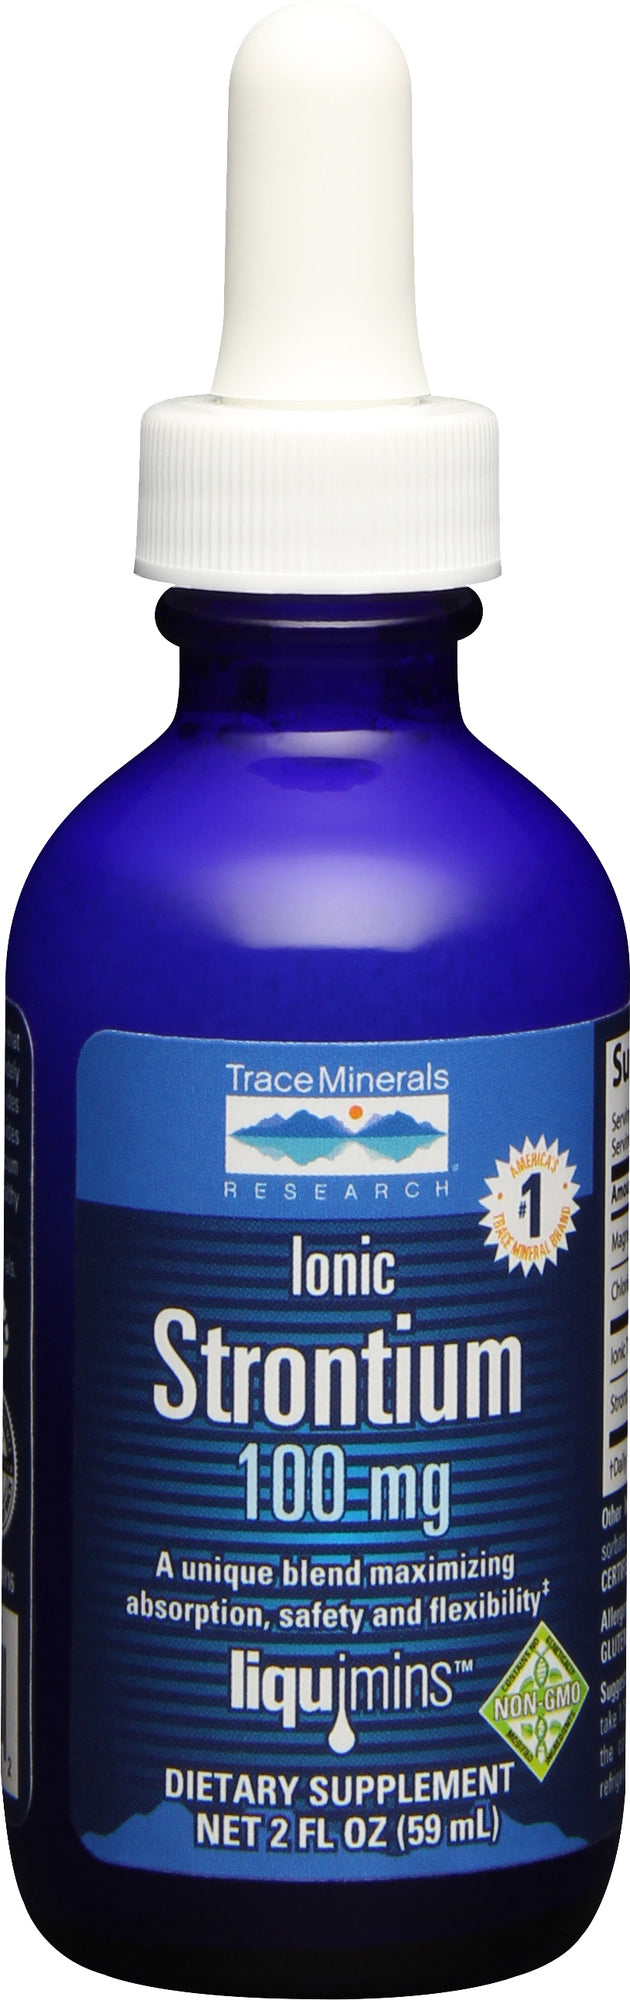 Ionic Strontium, 100 mg, 2 Fl Oz (59 mL) Liquid , Brand_Trace Minerals Potency_100 mg Size_2 Fl Oz